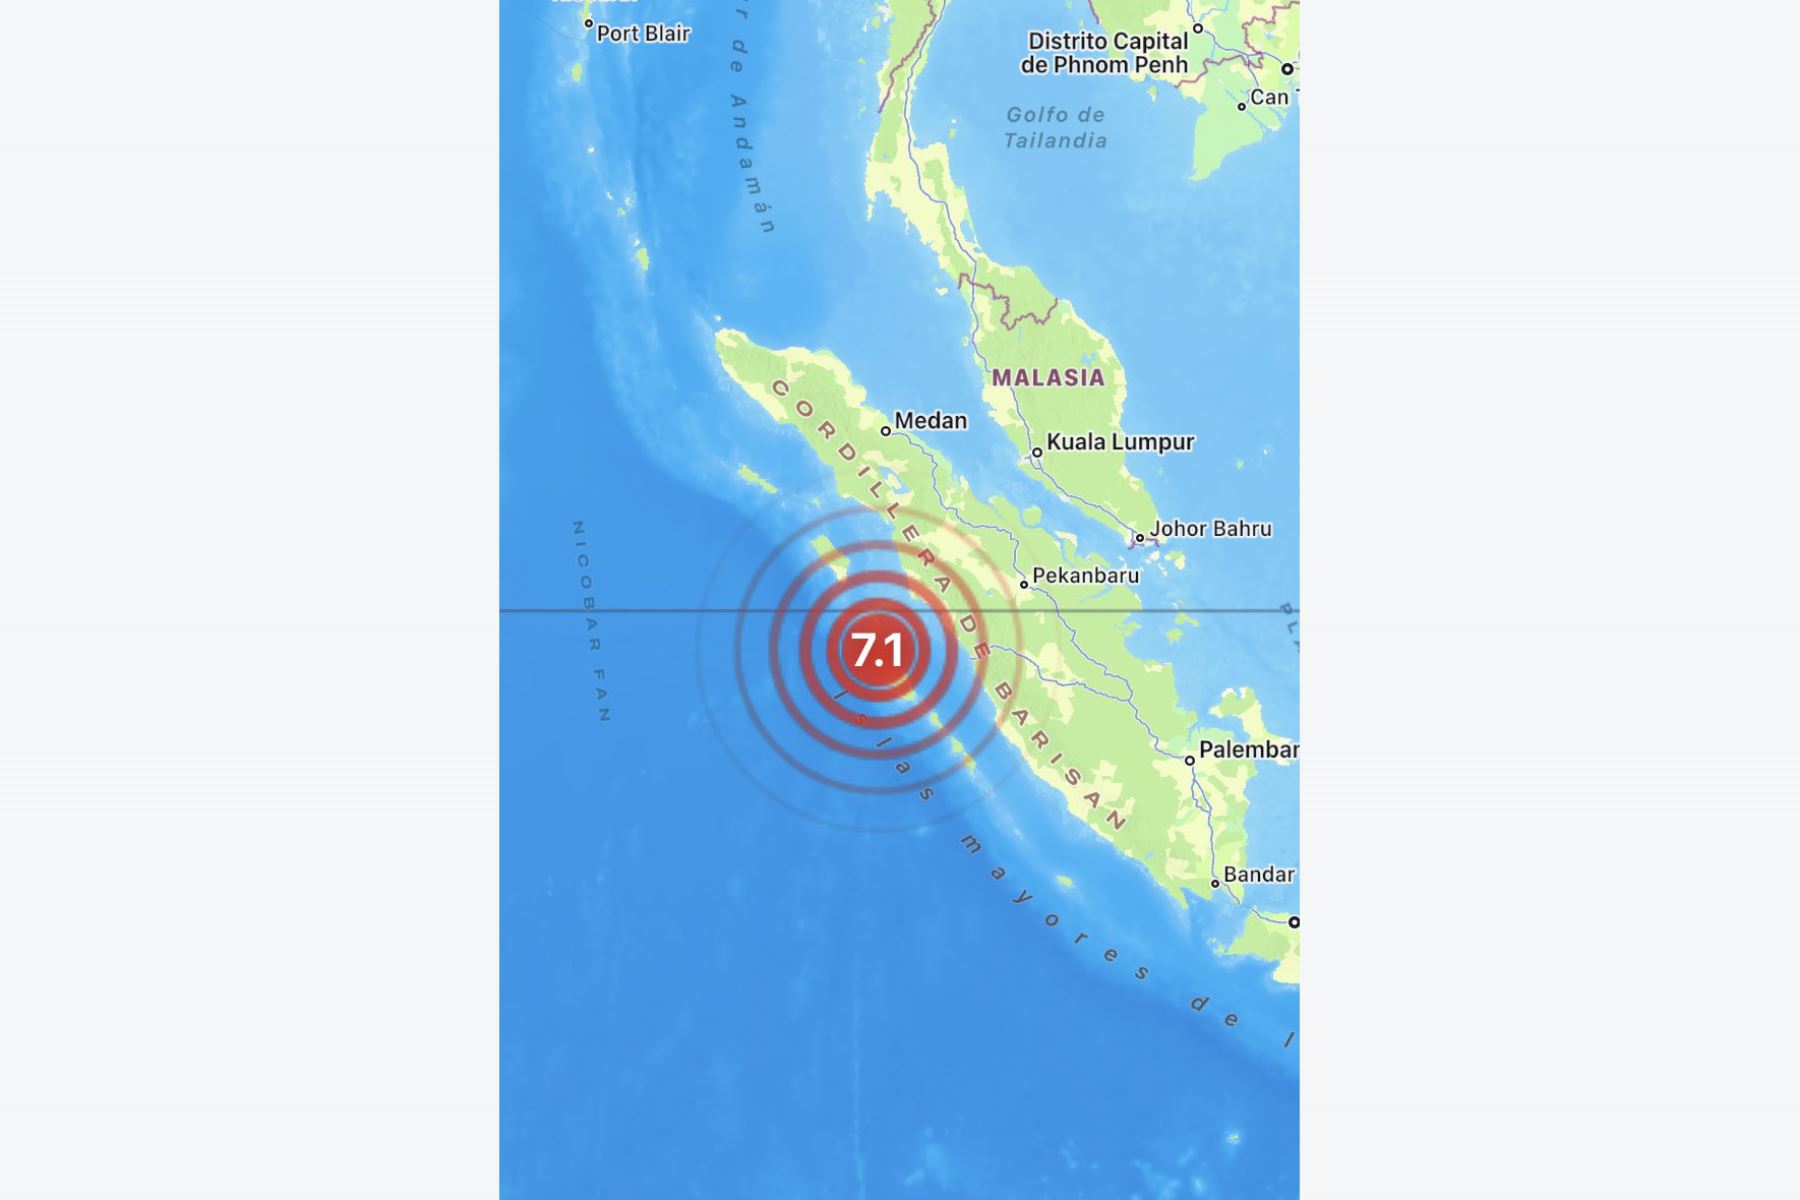 El sismo se registró a poco más de 15 km de profundidad a las 03:00 horas del martes (20:00 GMT). Foto: INTERNET/Medios